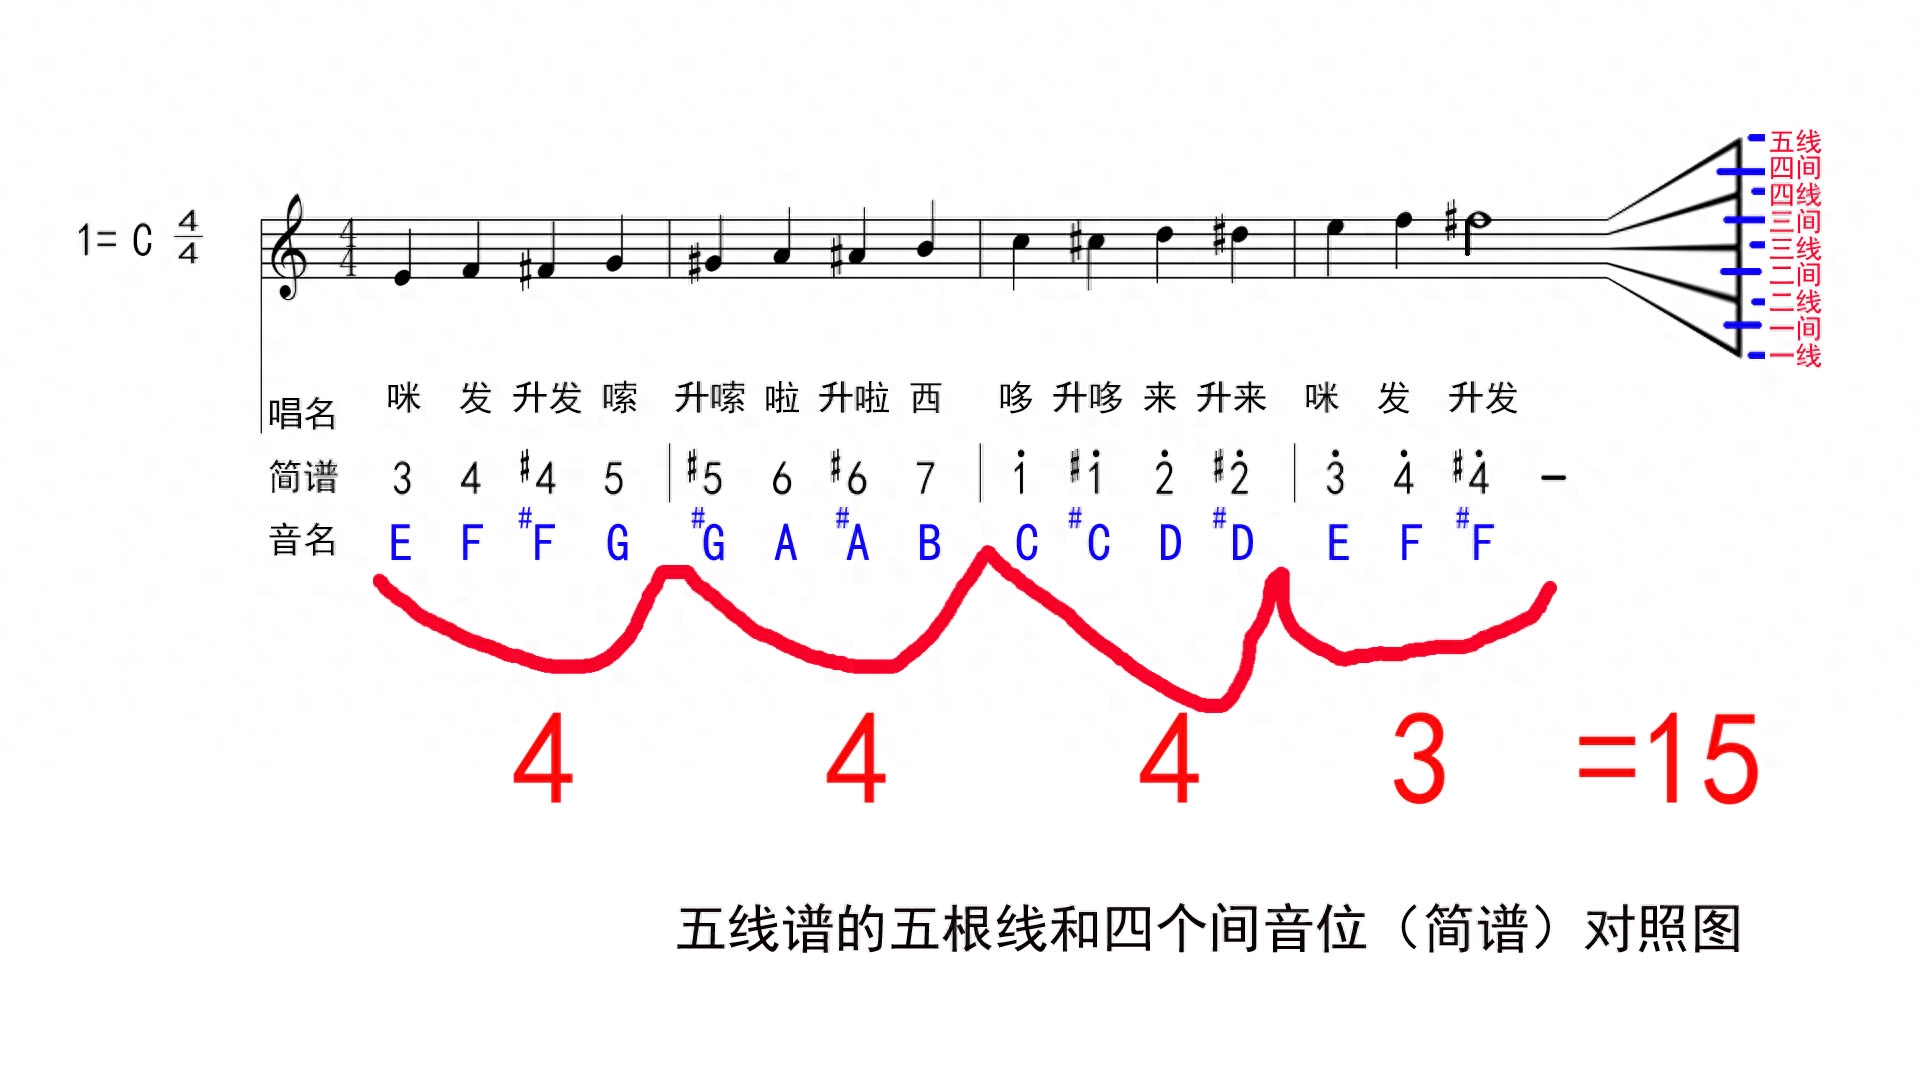 五线谱中符号的意思_图解符号五线谱中有一竖线_五线谱中的各种符号图解